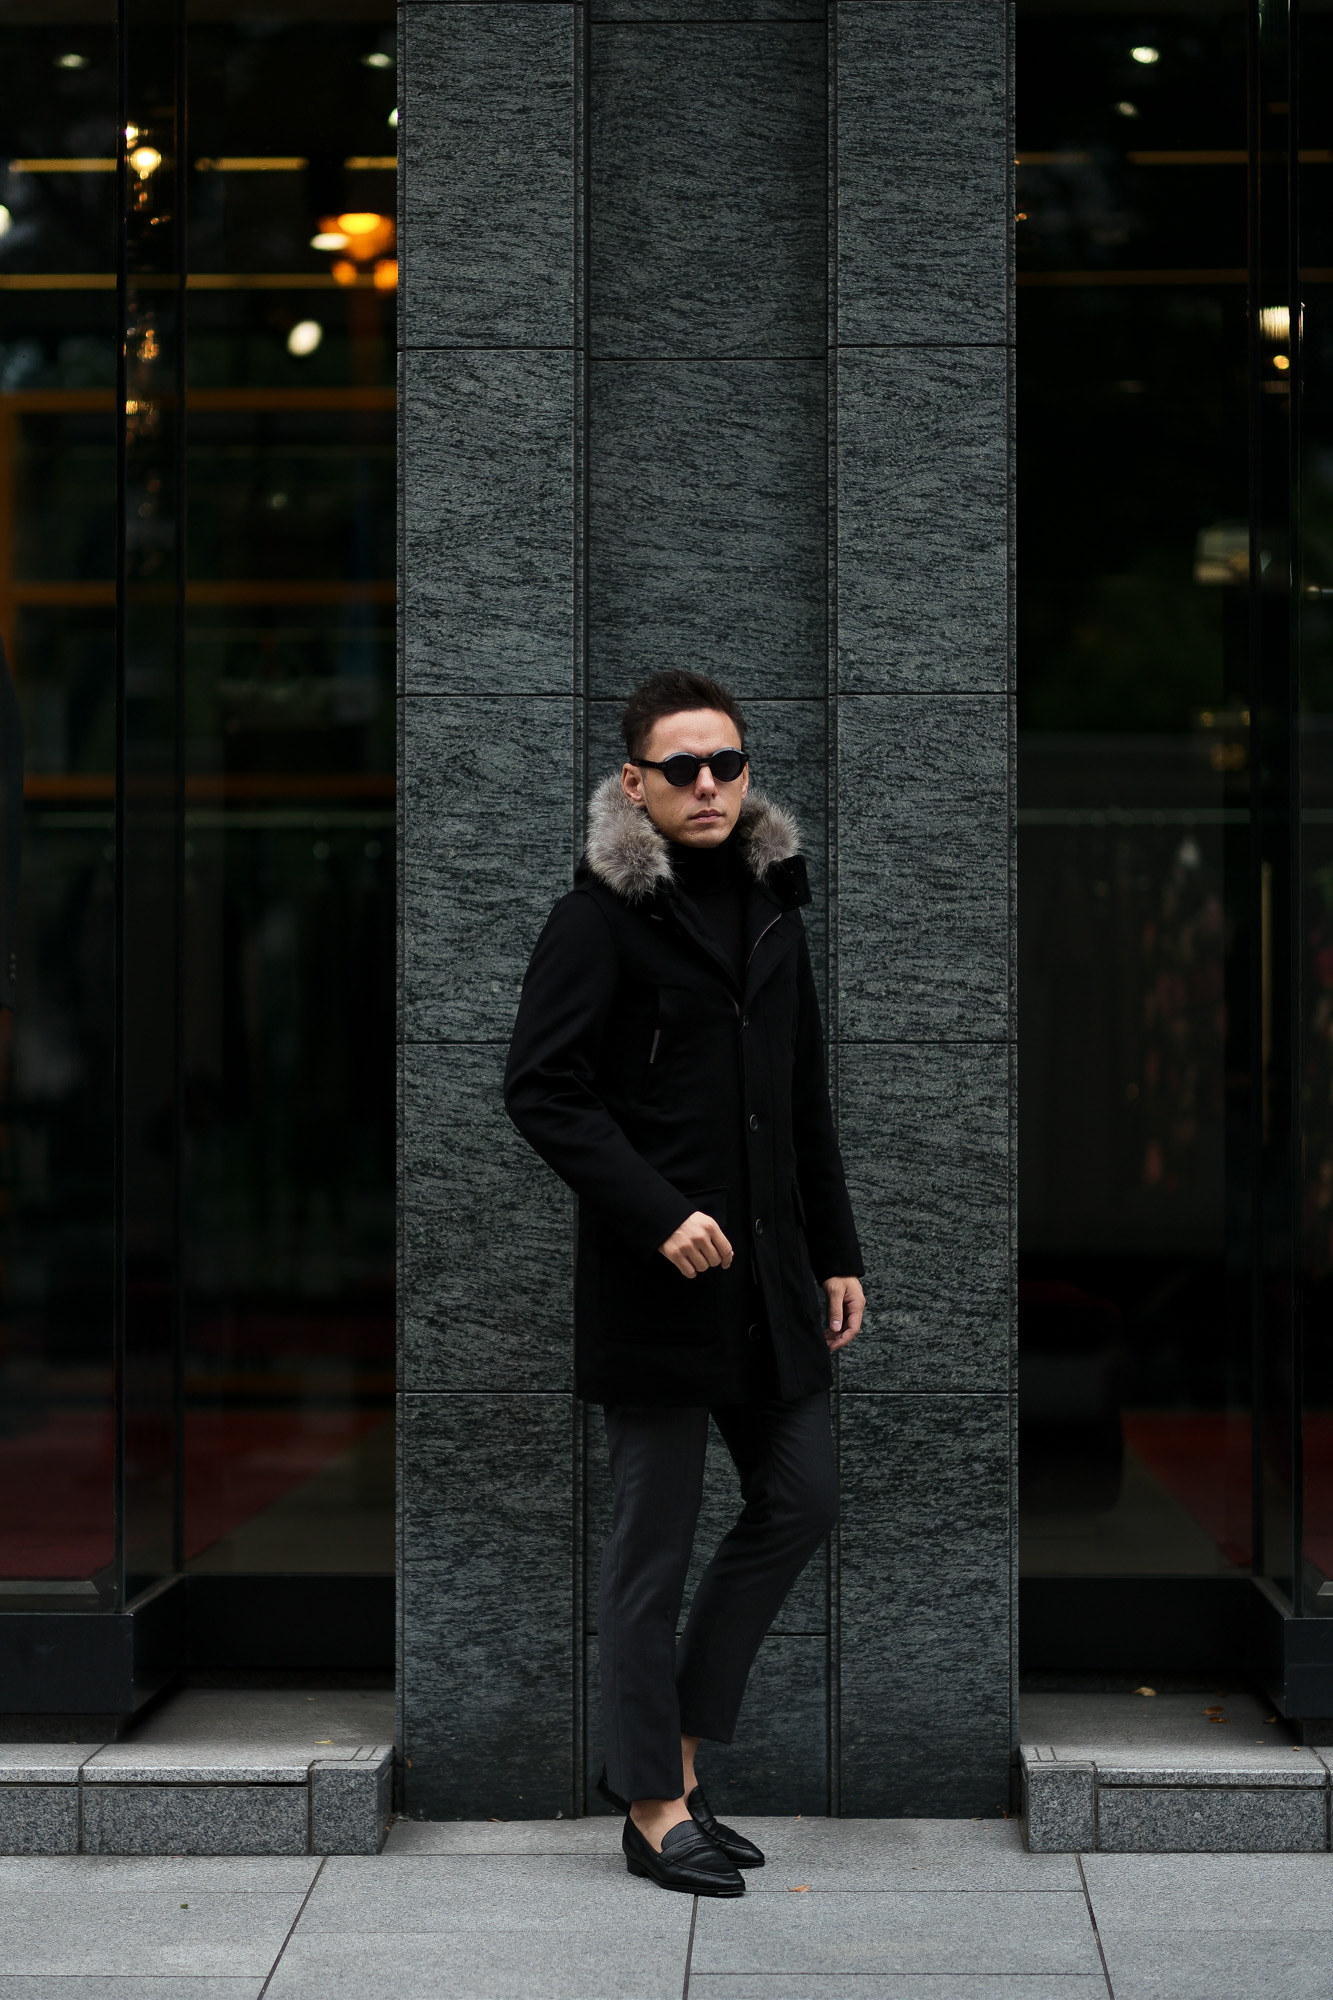 HERNO(ヘルノ) N-3B Cashmere coat (カシミア コート) LUIGI COLOMBO (ルイージ・コロンボ) 撥水 カシミア  ロング コート BLACK (ブラック・9300) Made in italy (イタリア製) 2019 秋冬新作 –  正規通販・名古屋のメンズセレクトショップ Alto e Diritto